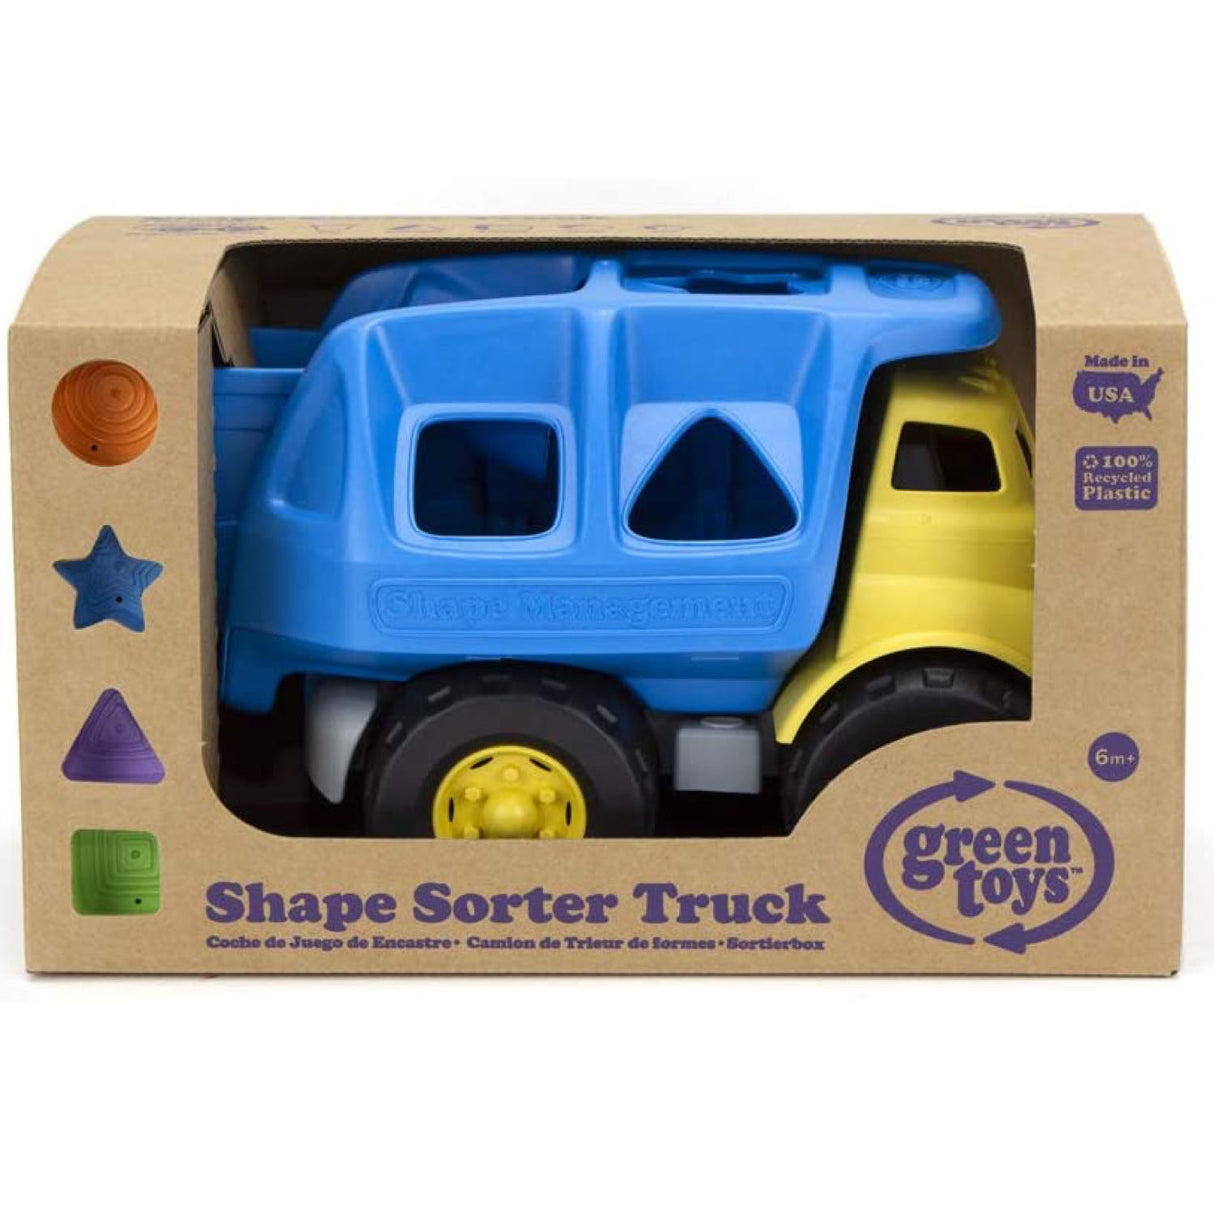 Shape Sorter Truck